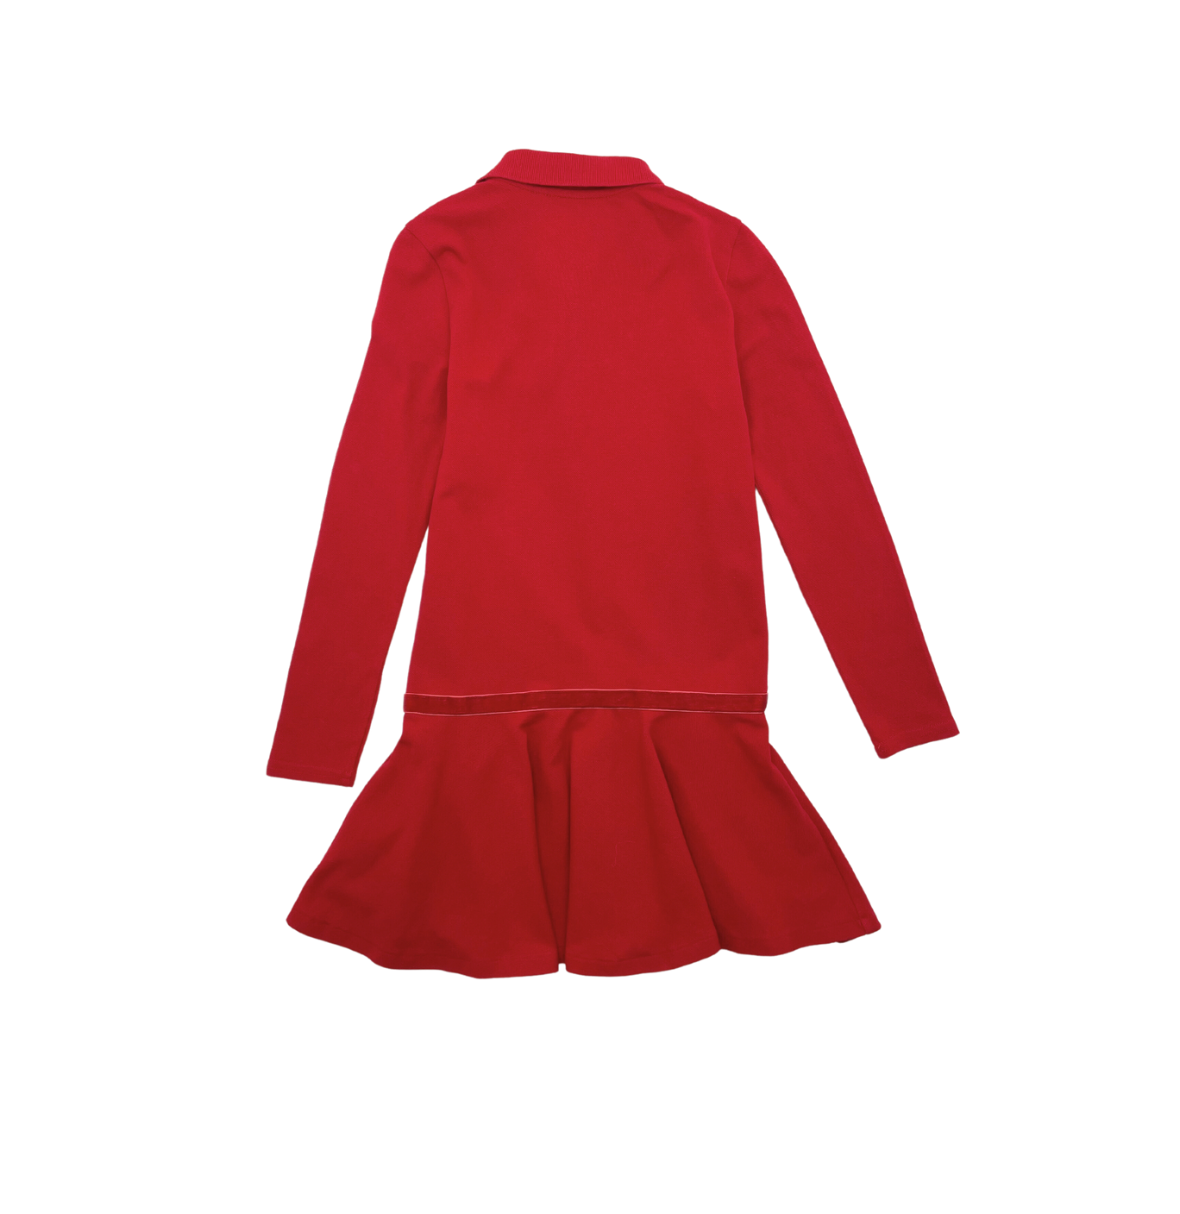 RALPH LAUREN - Red dress - 6 years old